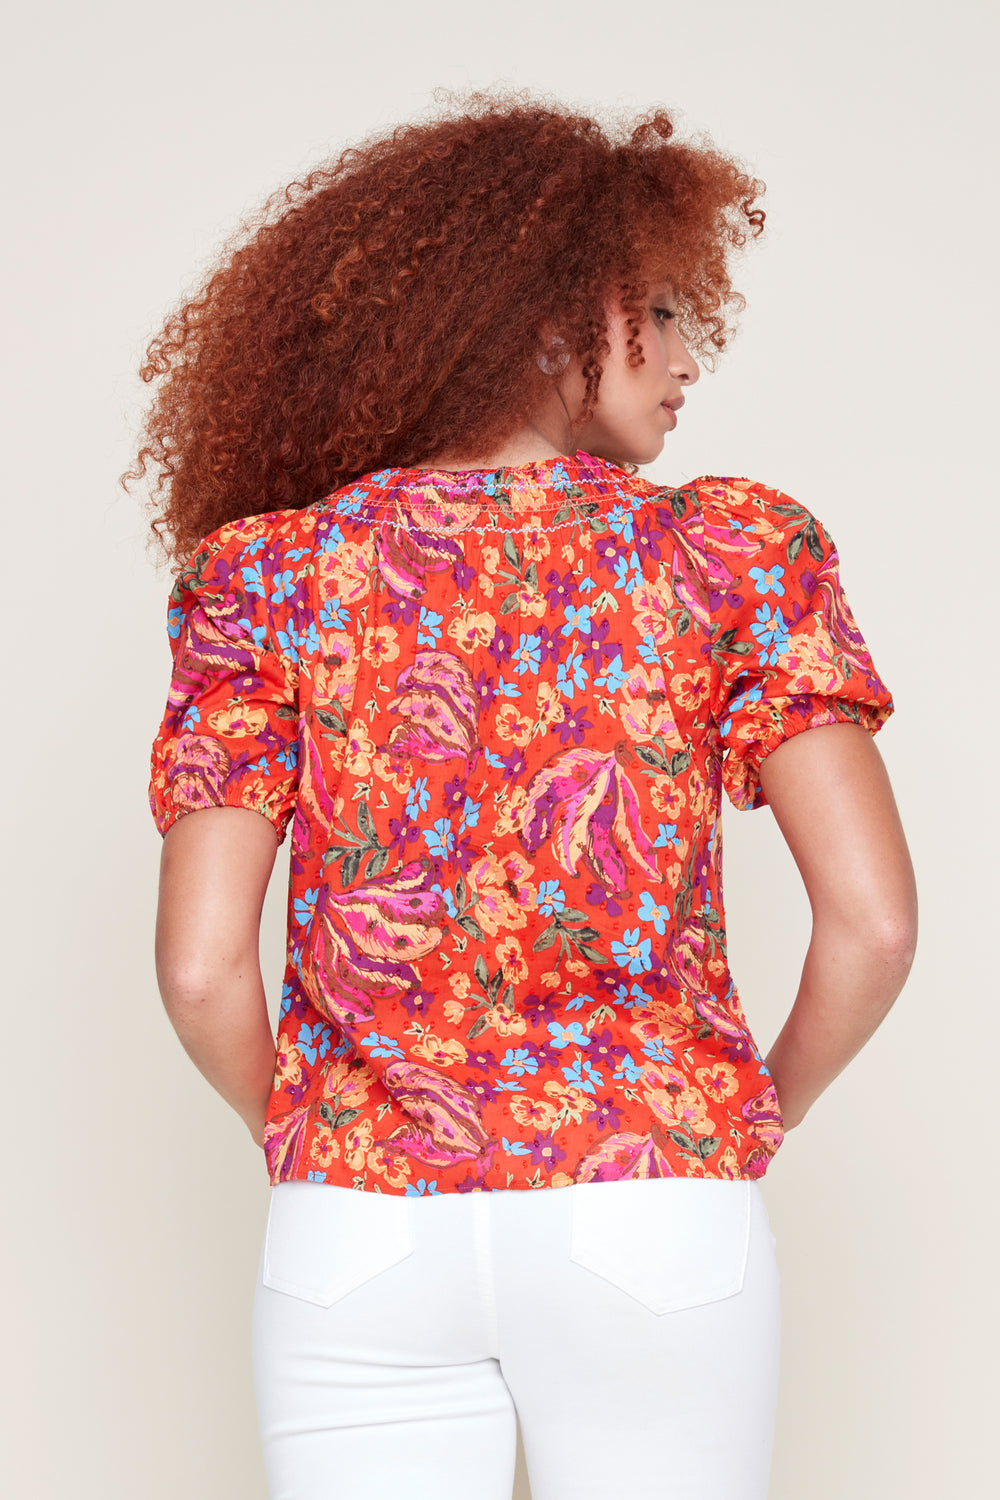 Renuar shirt 5097, short  sleeve cotton floral